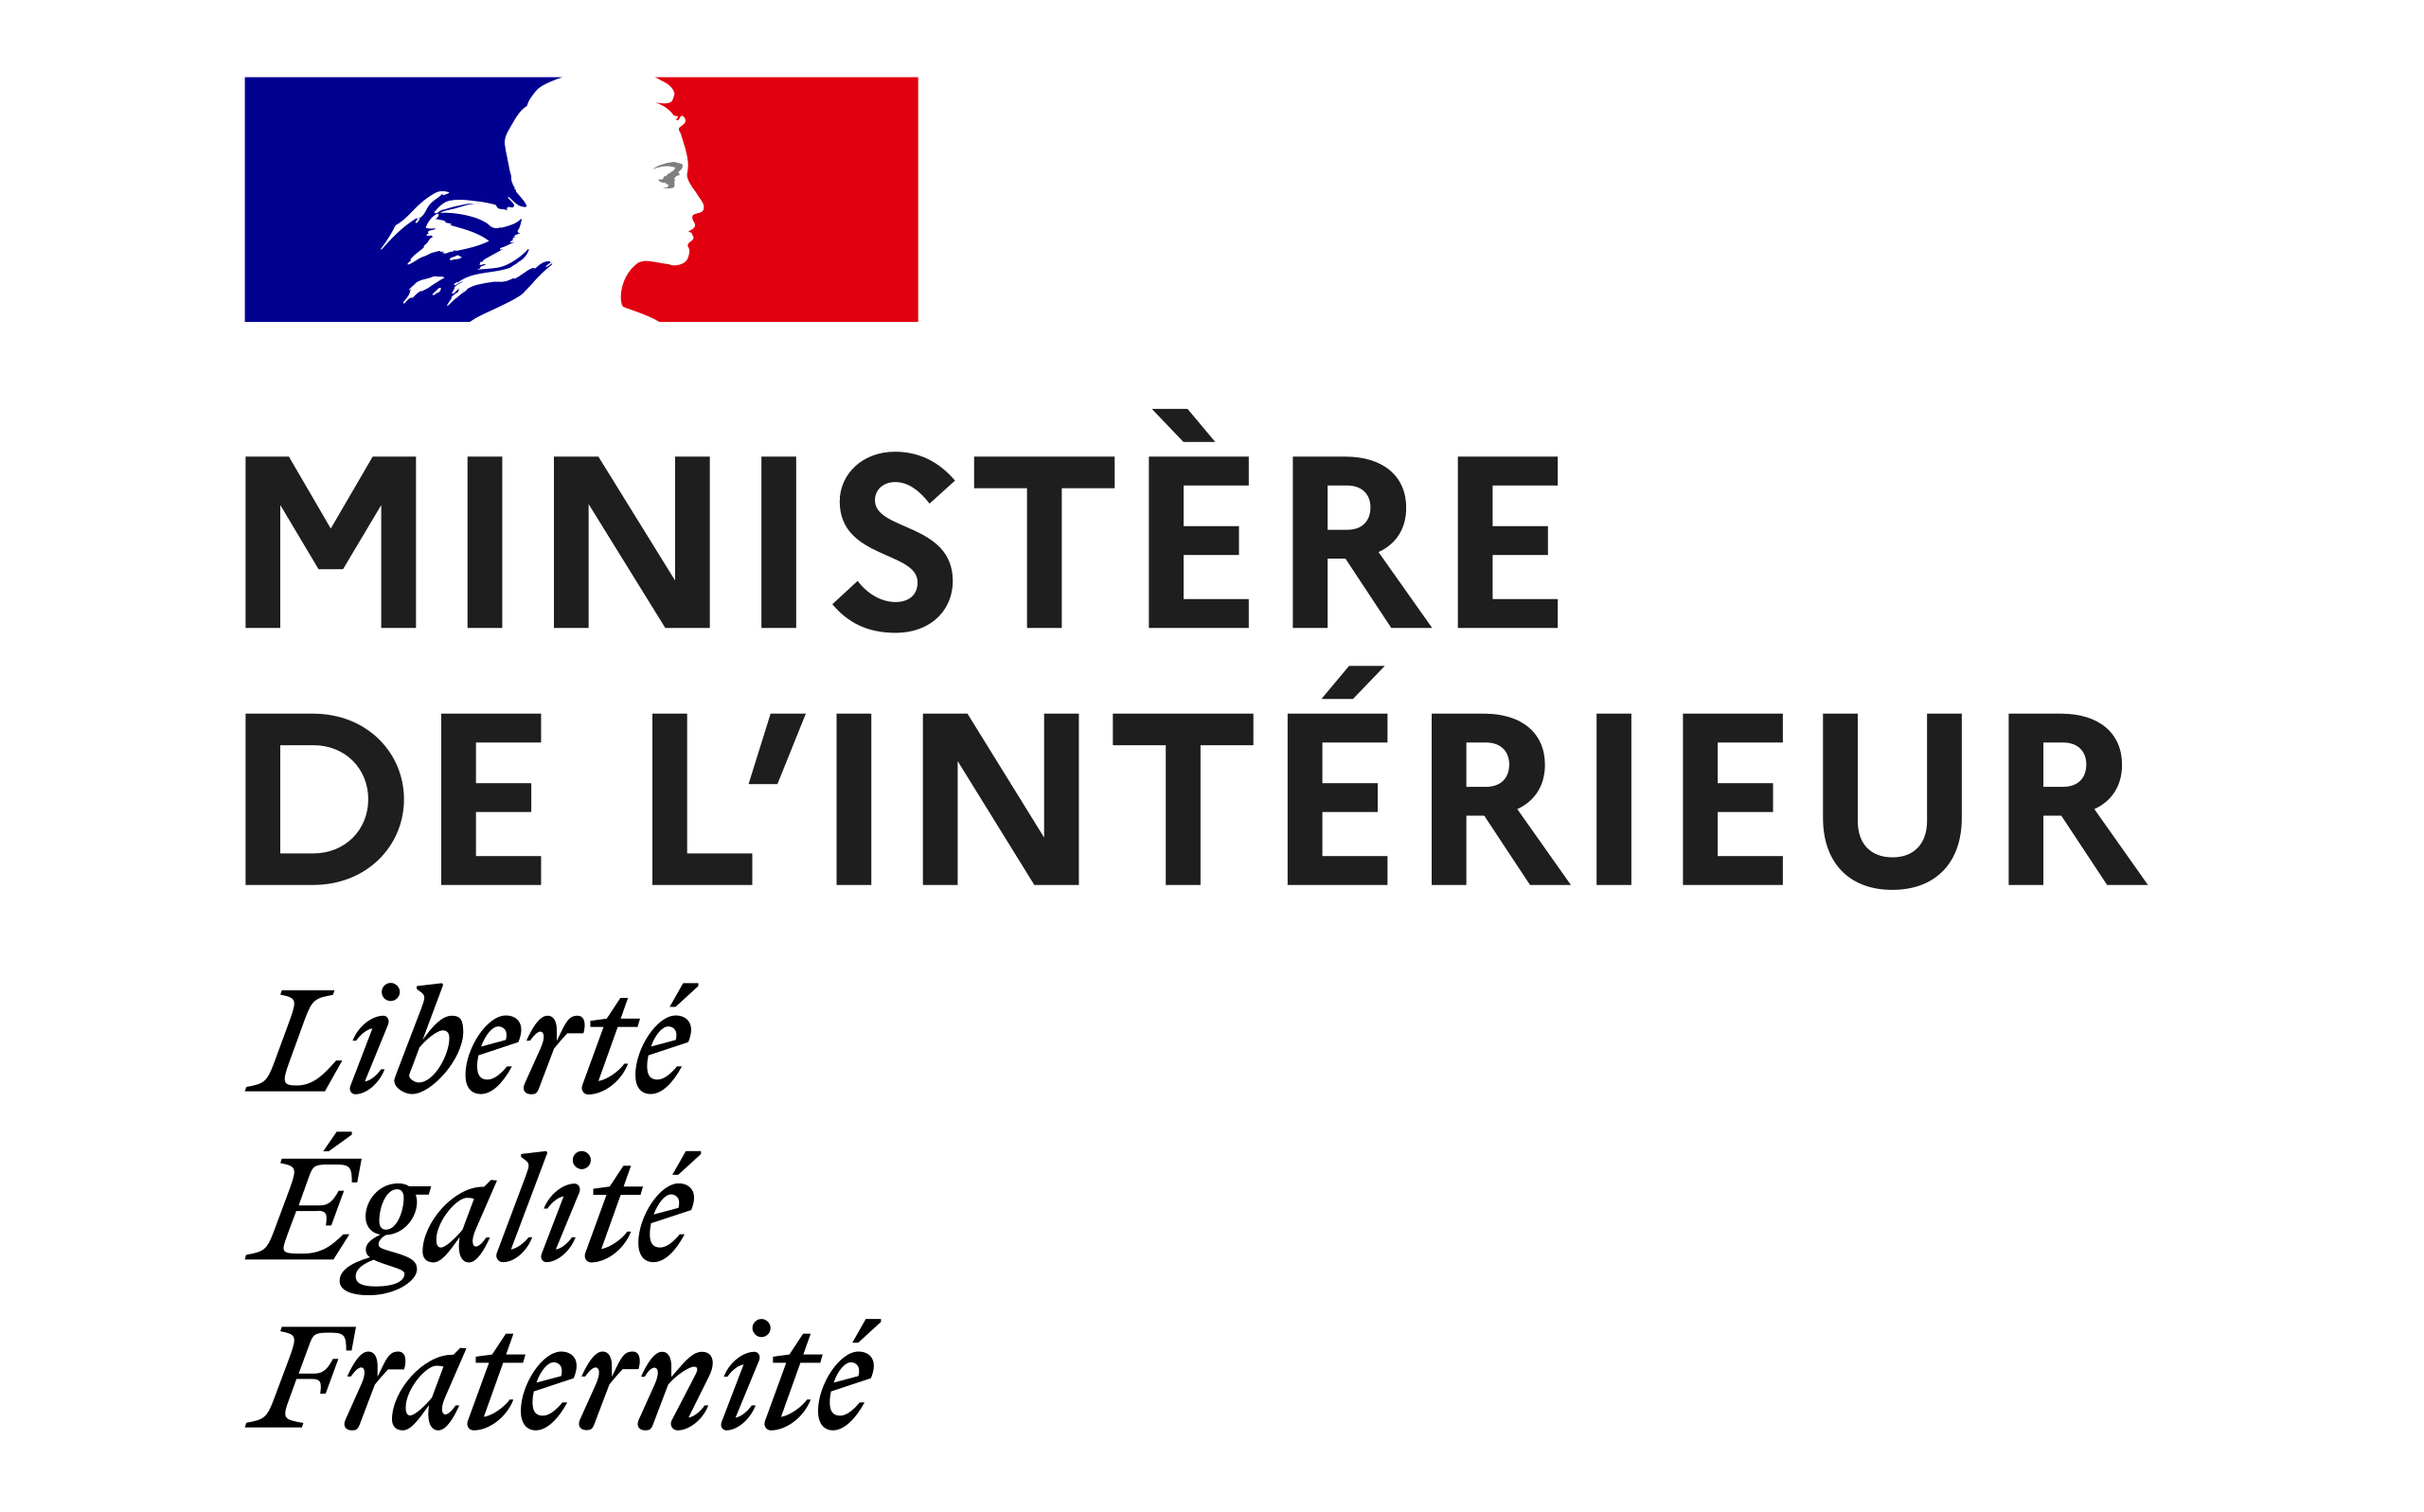 Link to the Ministère de l'Intérieur website